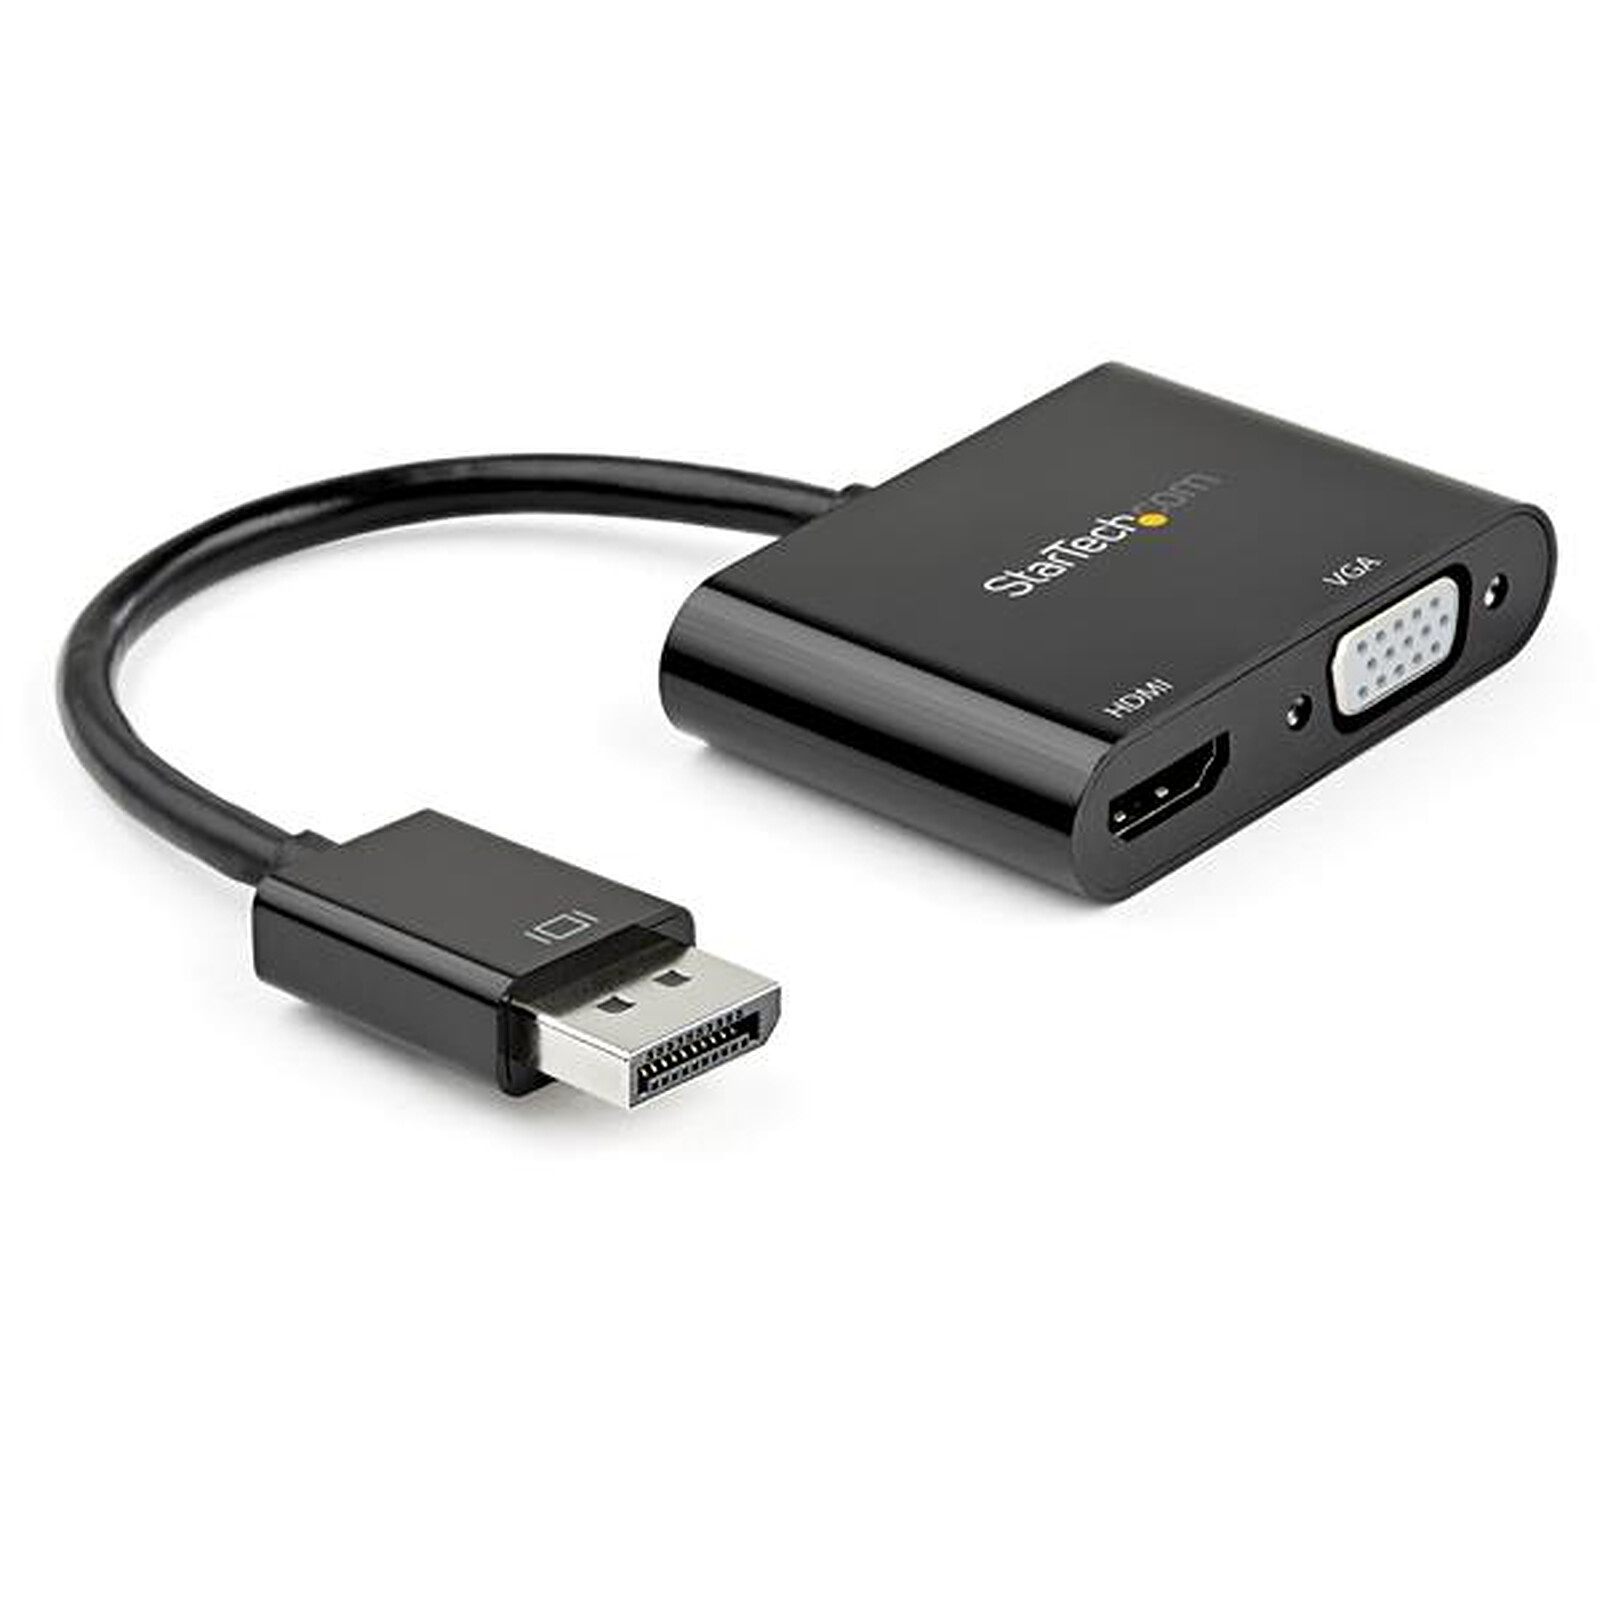  Cable Matters Adaptador activo DisplayPort a HDMI (adaptador  activo DP a HDMI) compatible con tecnología Eyefinity y resolución 4K :  Electrónica